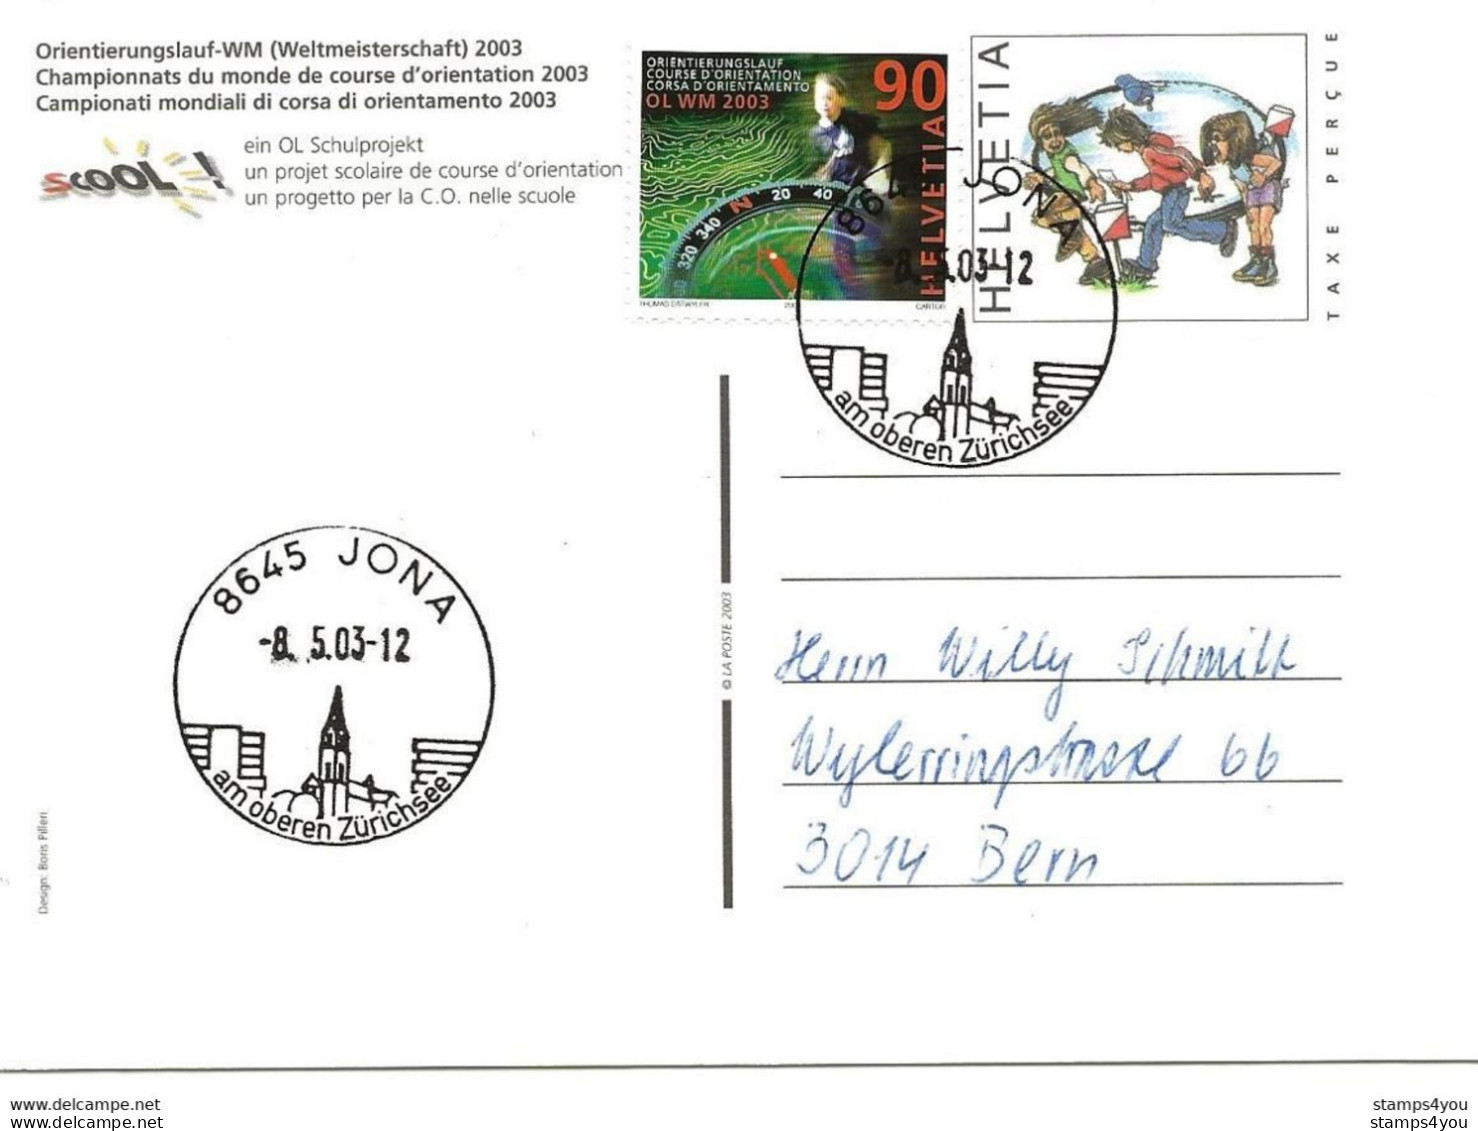 433 - 30 - Entier Postal  "Champ. Monde Course Orientation 2003" Cachets Illustrés Jona 2003 - Leichtathletik